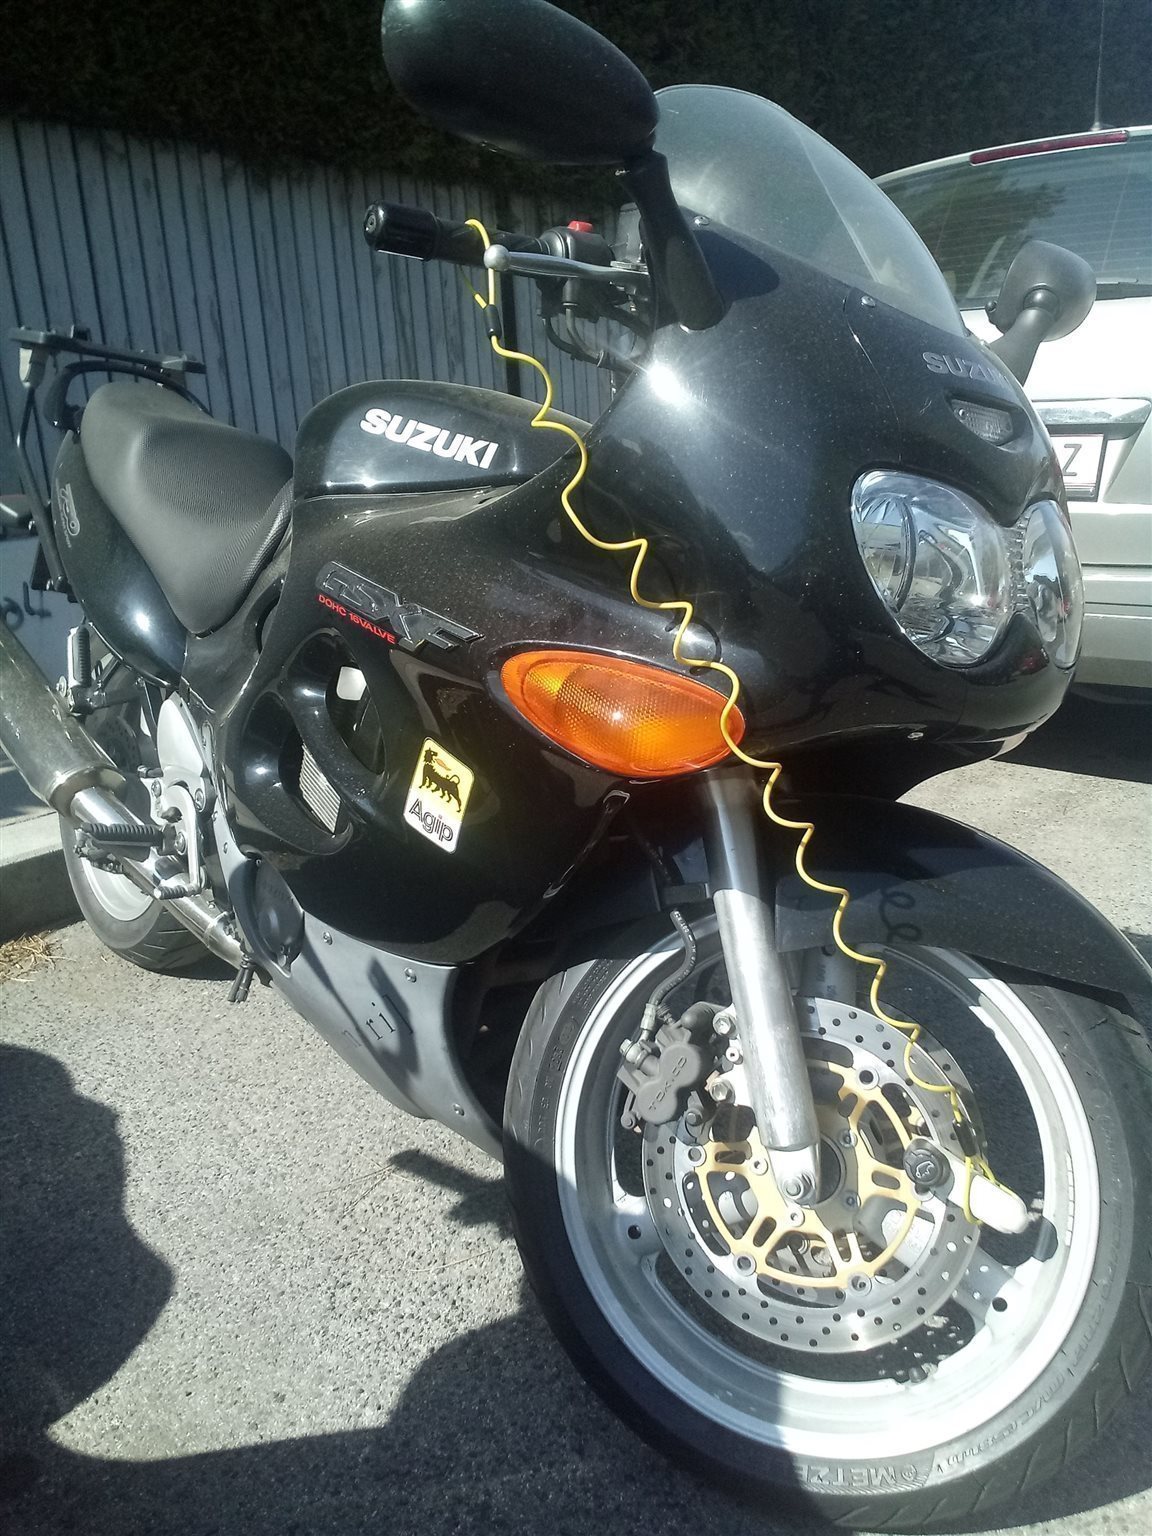 Suchergebnis Auf  Für: Suzuki Gsx 750 F - Motorrad